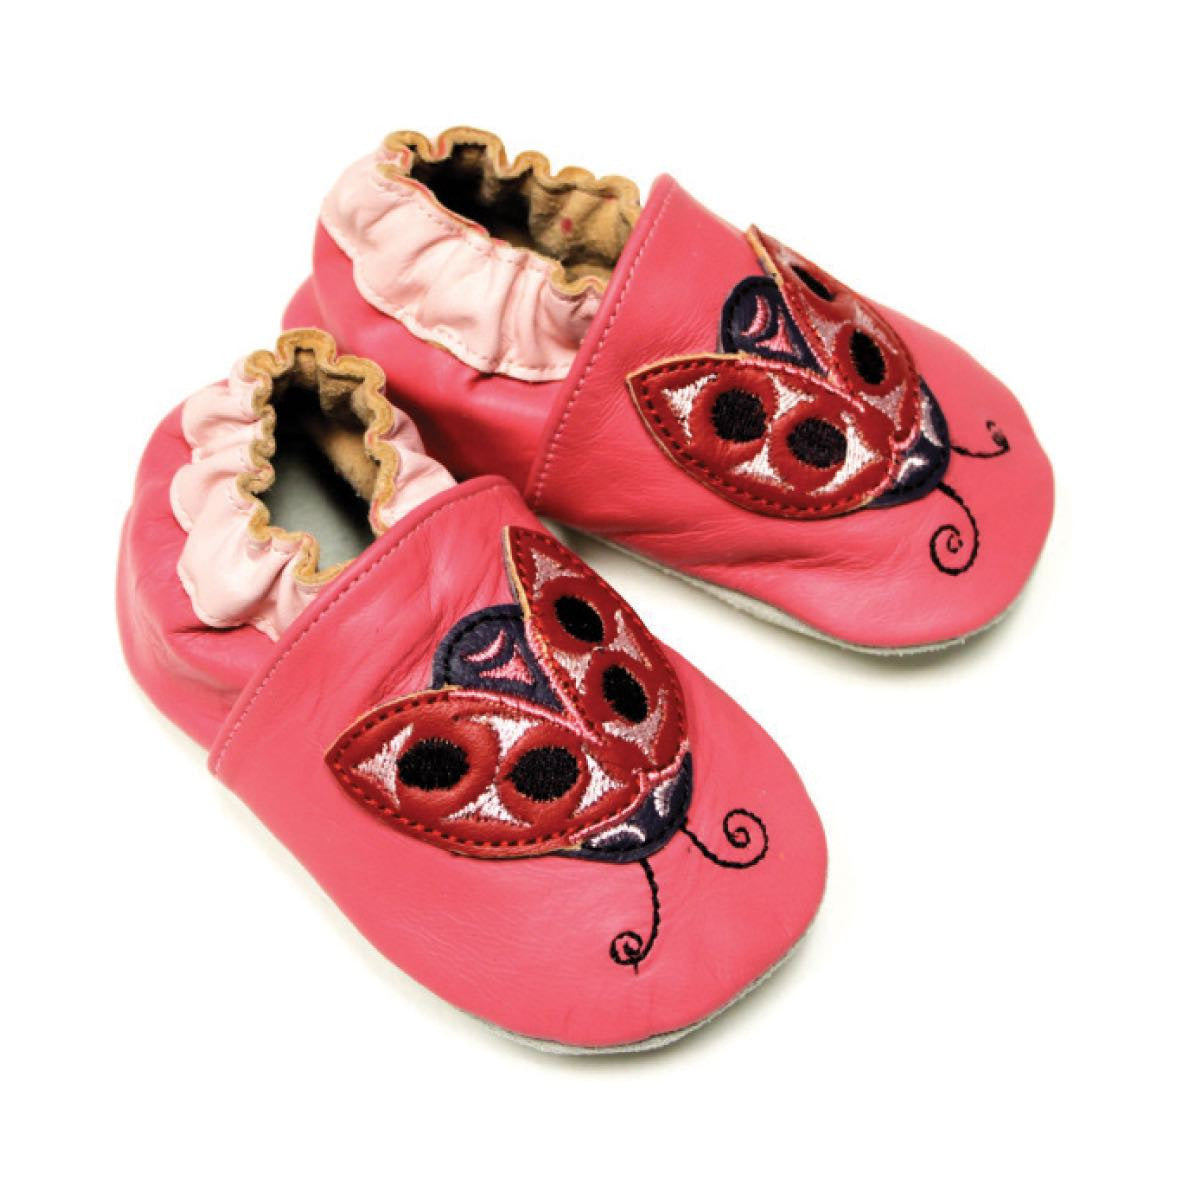 Baby Shoes Ladybug